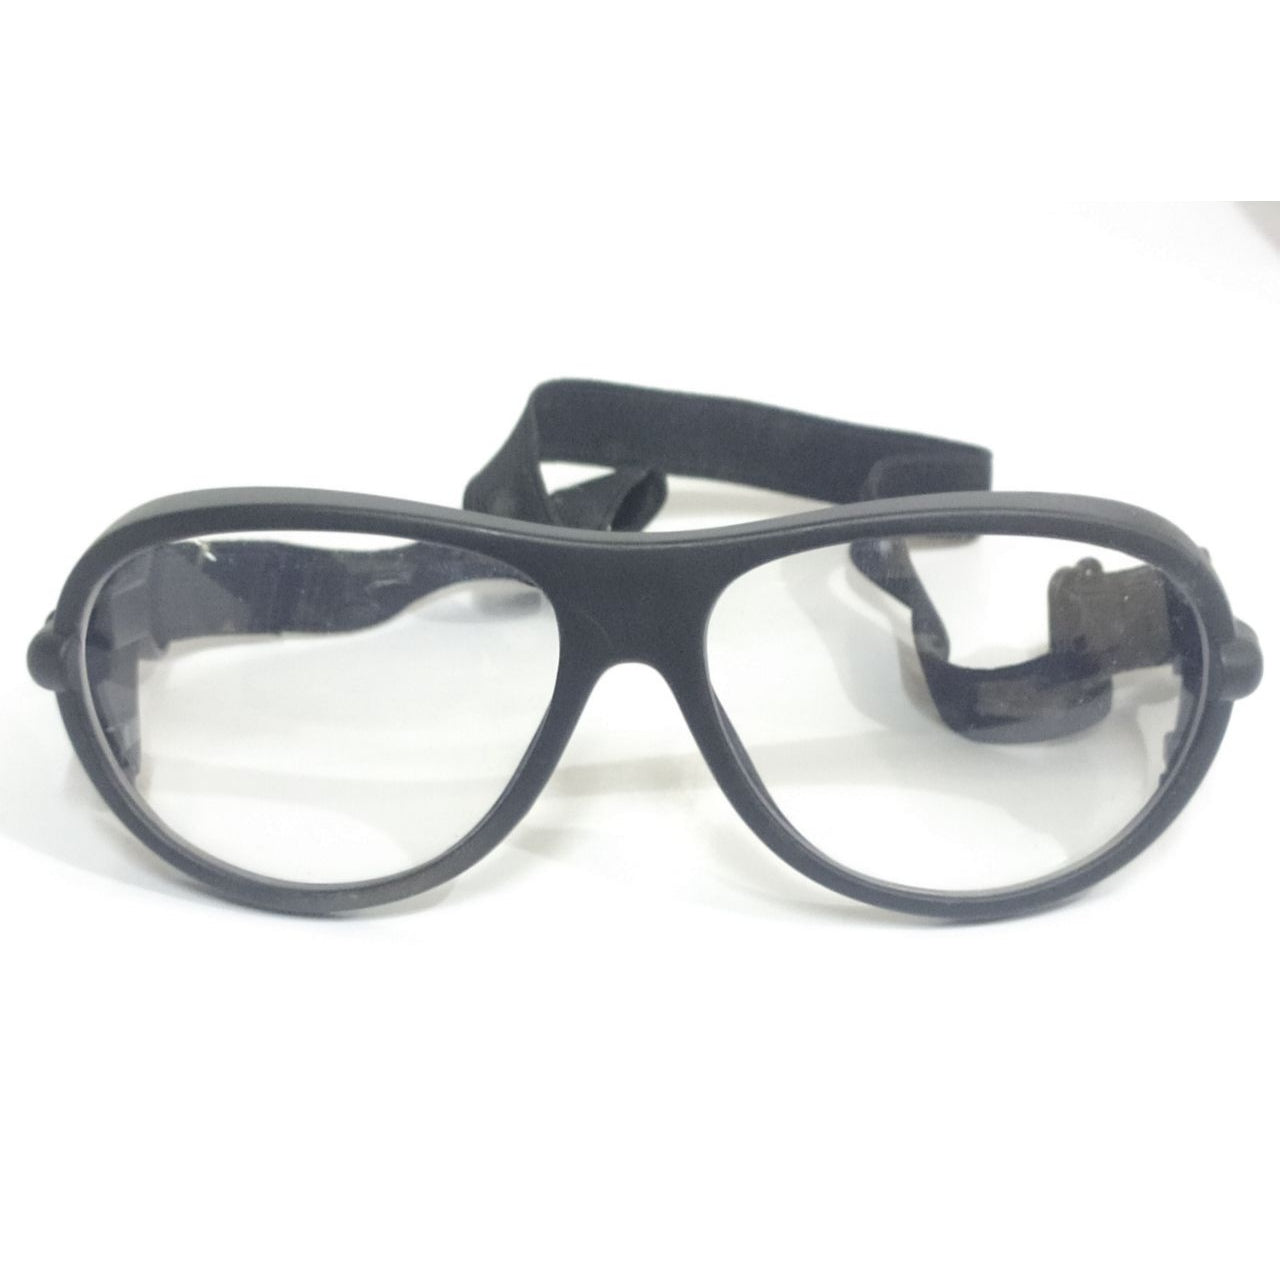 EYESafety Black Frame Prescription Sports Glasses with Strap